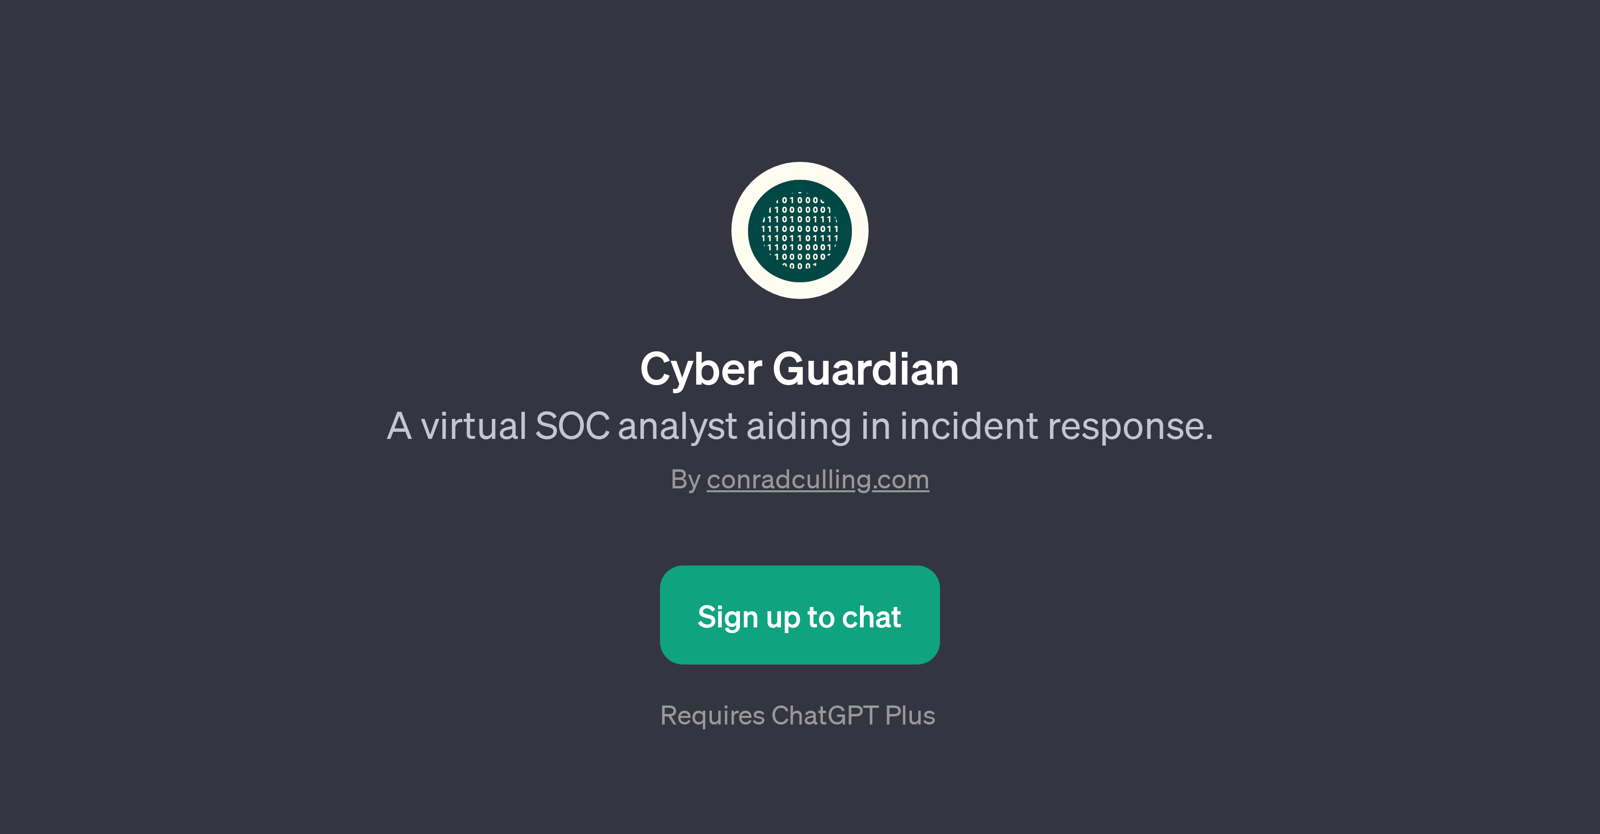 Cyber Guardian website